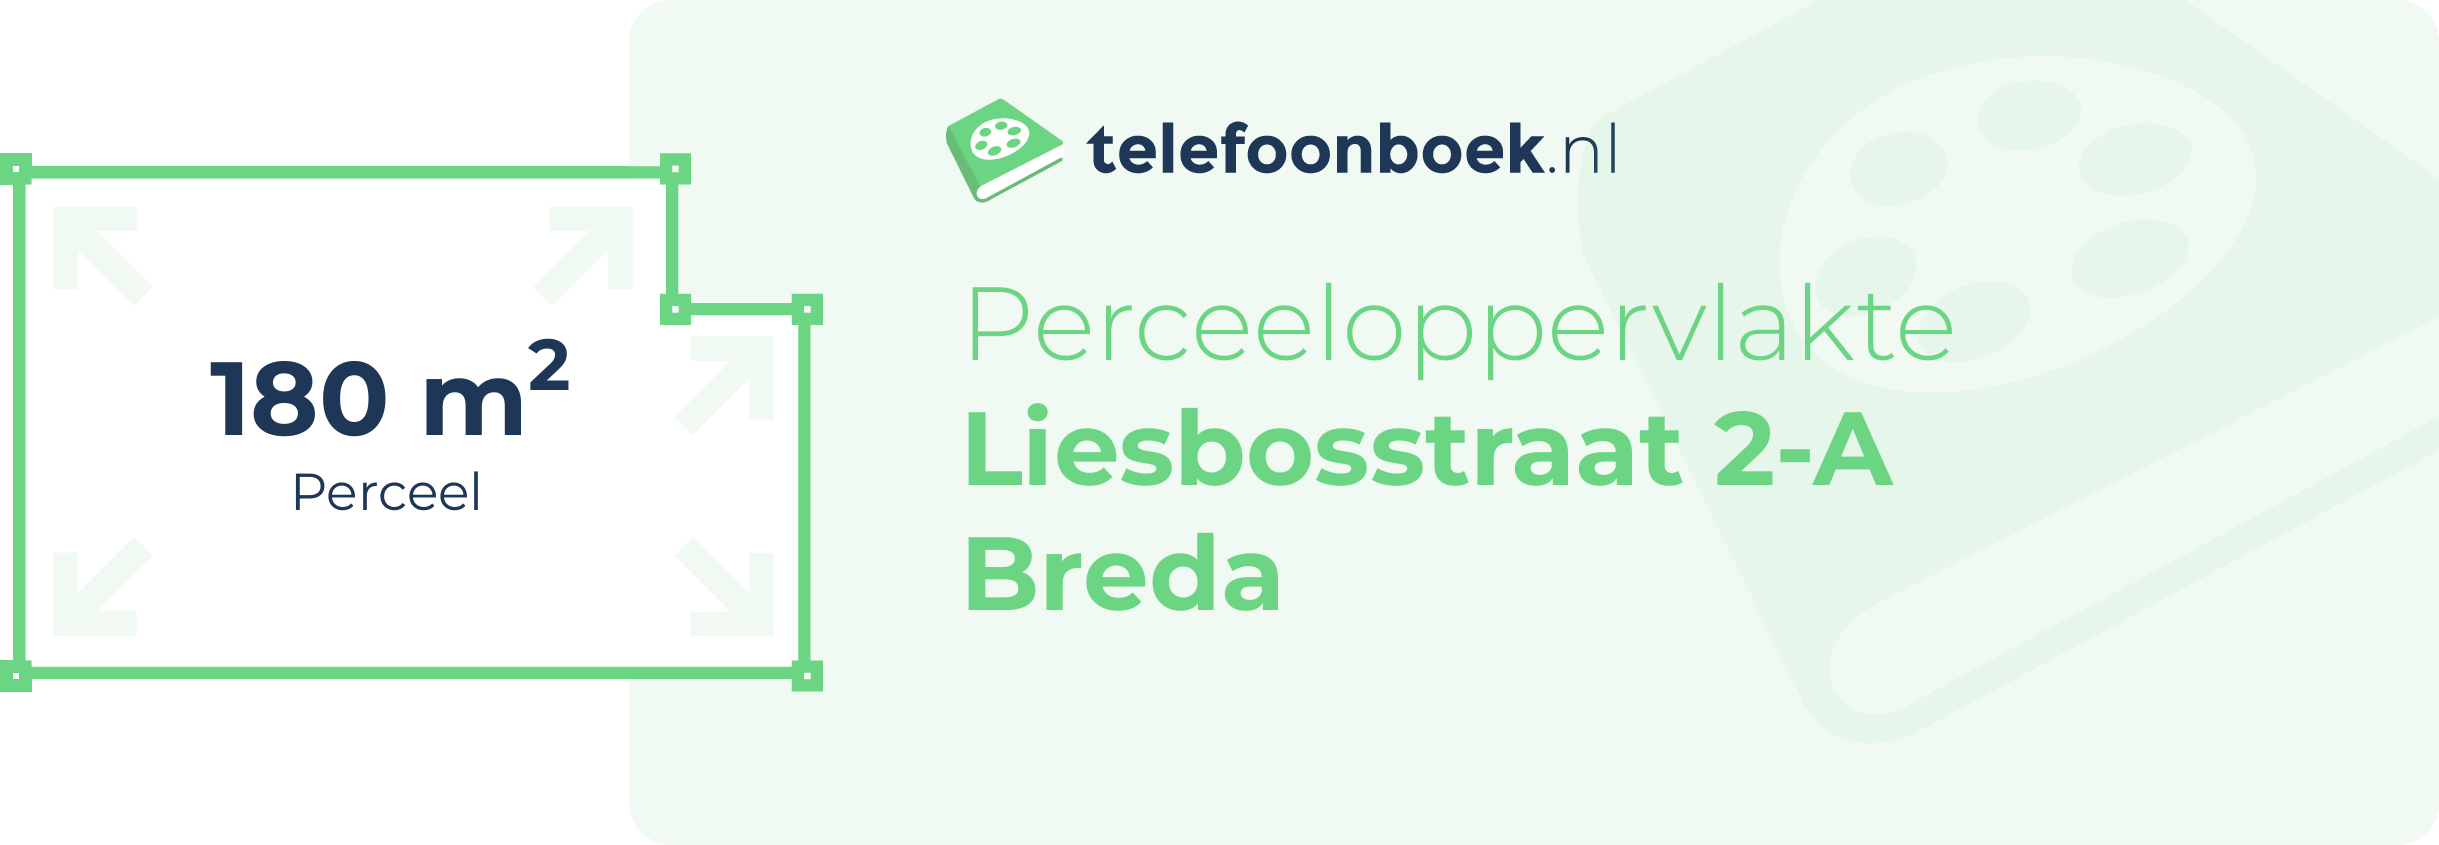 Perceeloppervlakte Liesbosstraat 2-A Breda